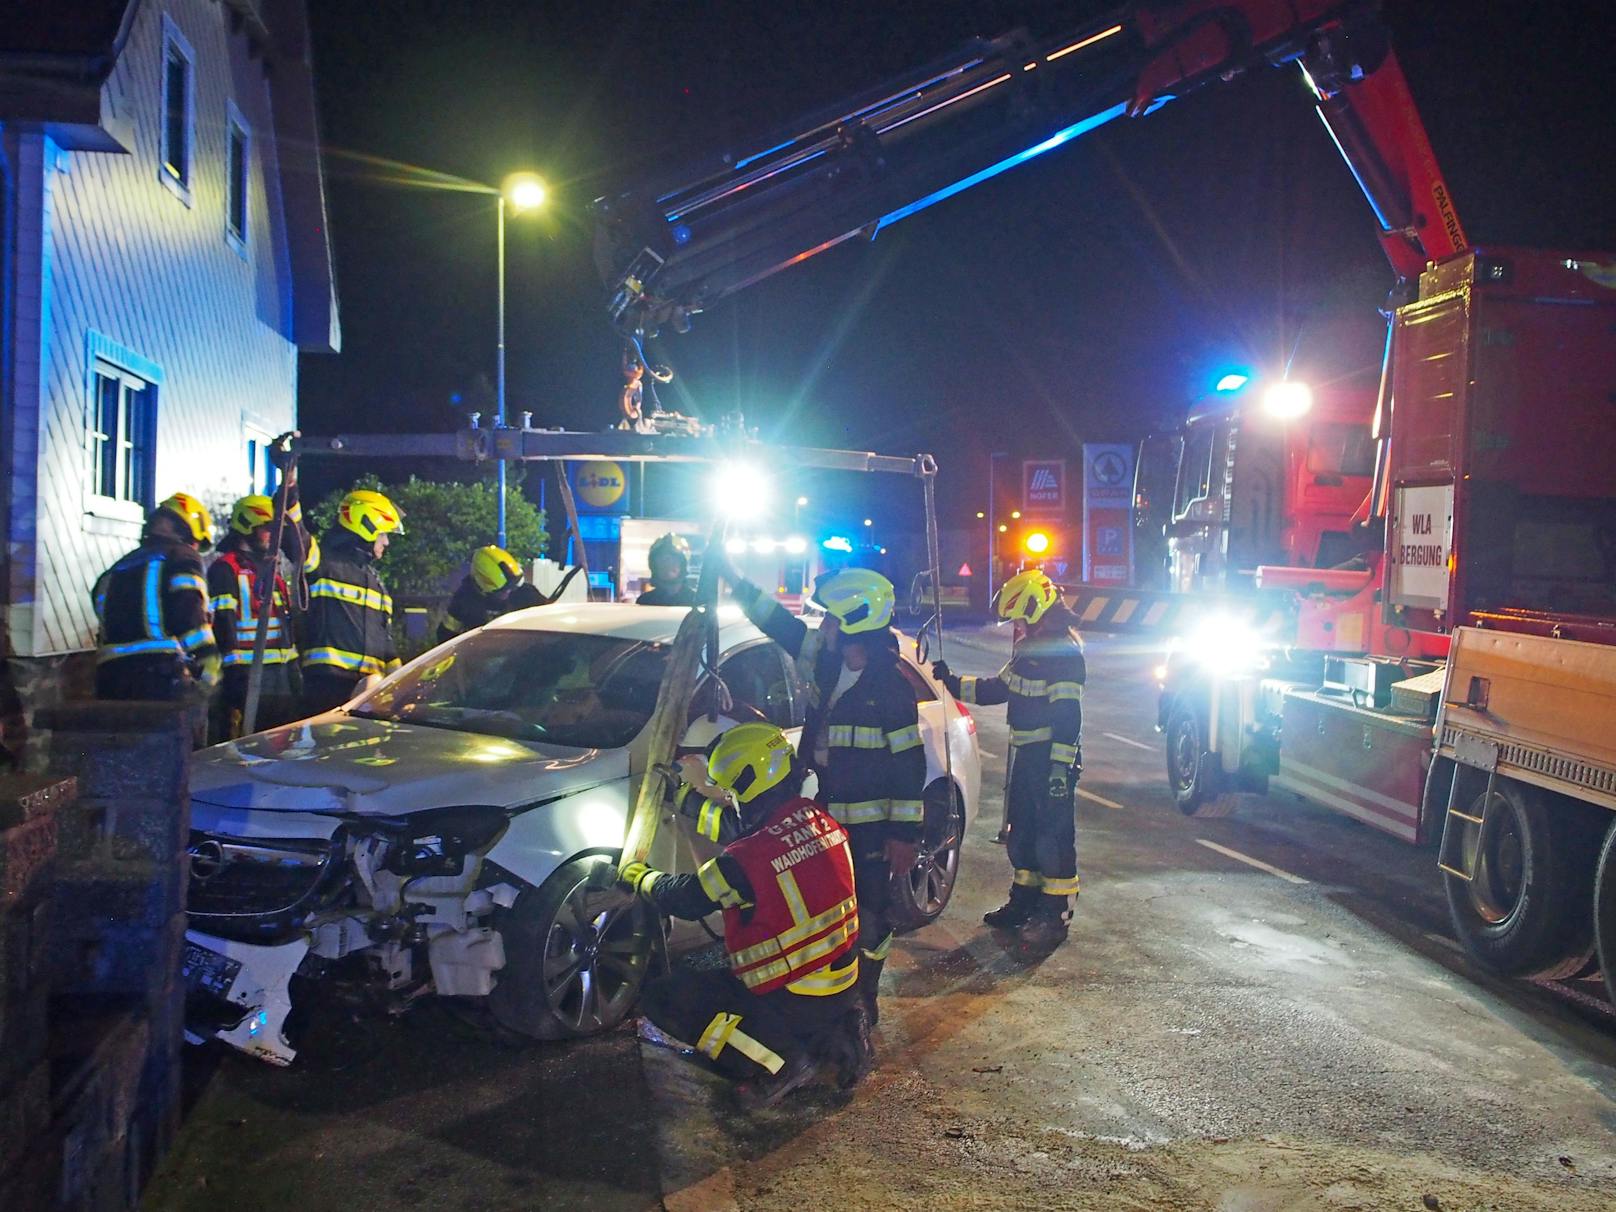 Sonntagnacht wurden die Einsatzkräfte der Feuerwehr Waidhofen/Thaya gegen 22:26 Uhr zu einem Verkehrsunfall auf der Brunner Straße alarmiert. Ein Pkw war über eine Verkehrsinsel gefahren und anschließend gegen eine Gartenmauer gekracht.